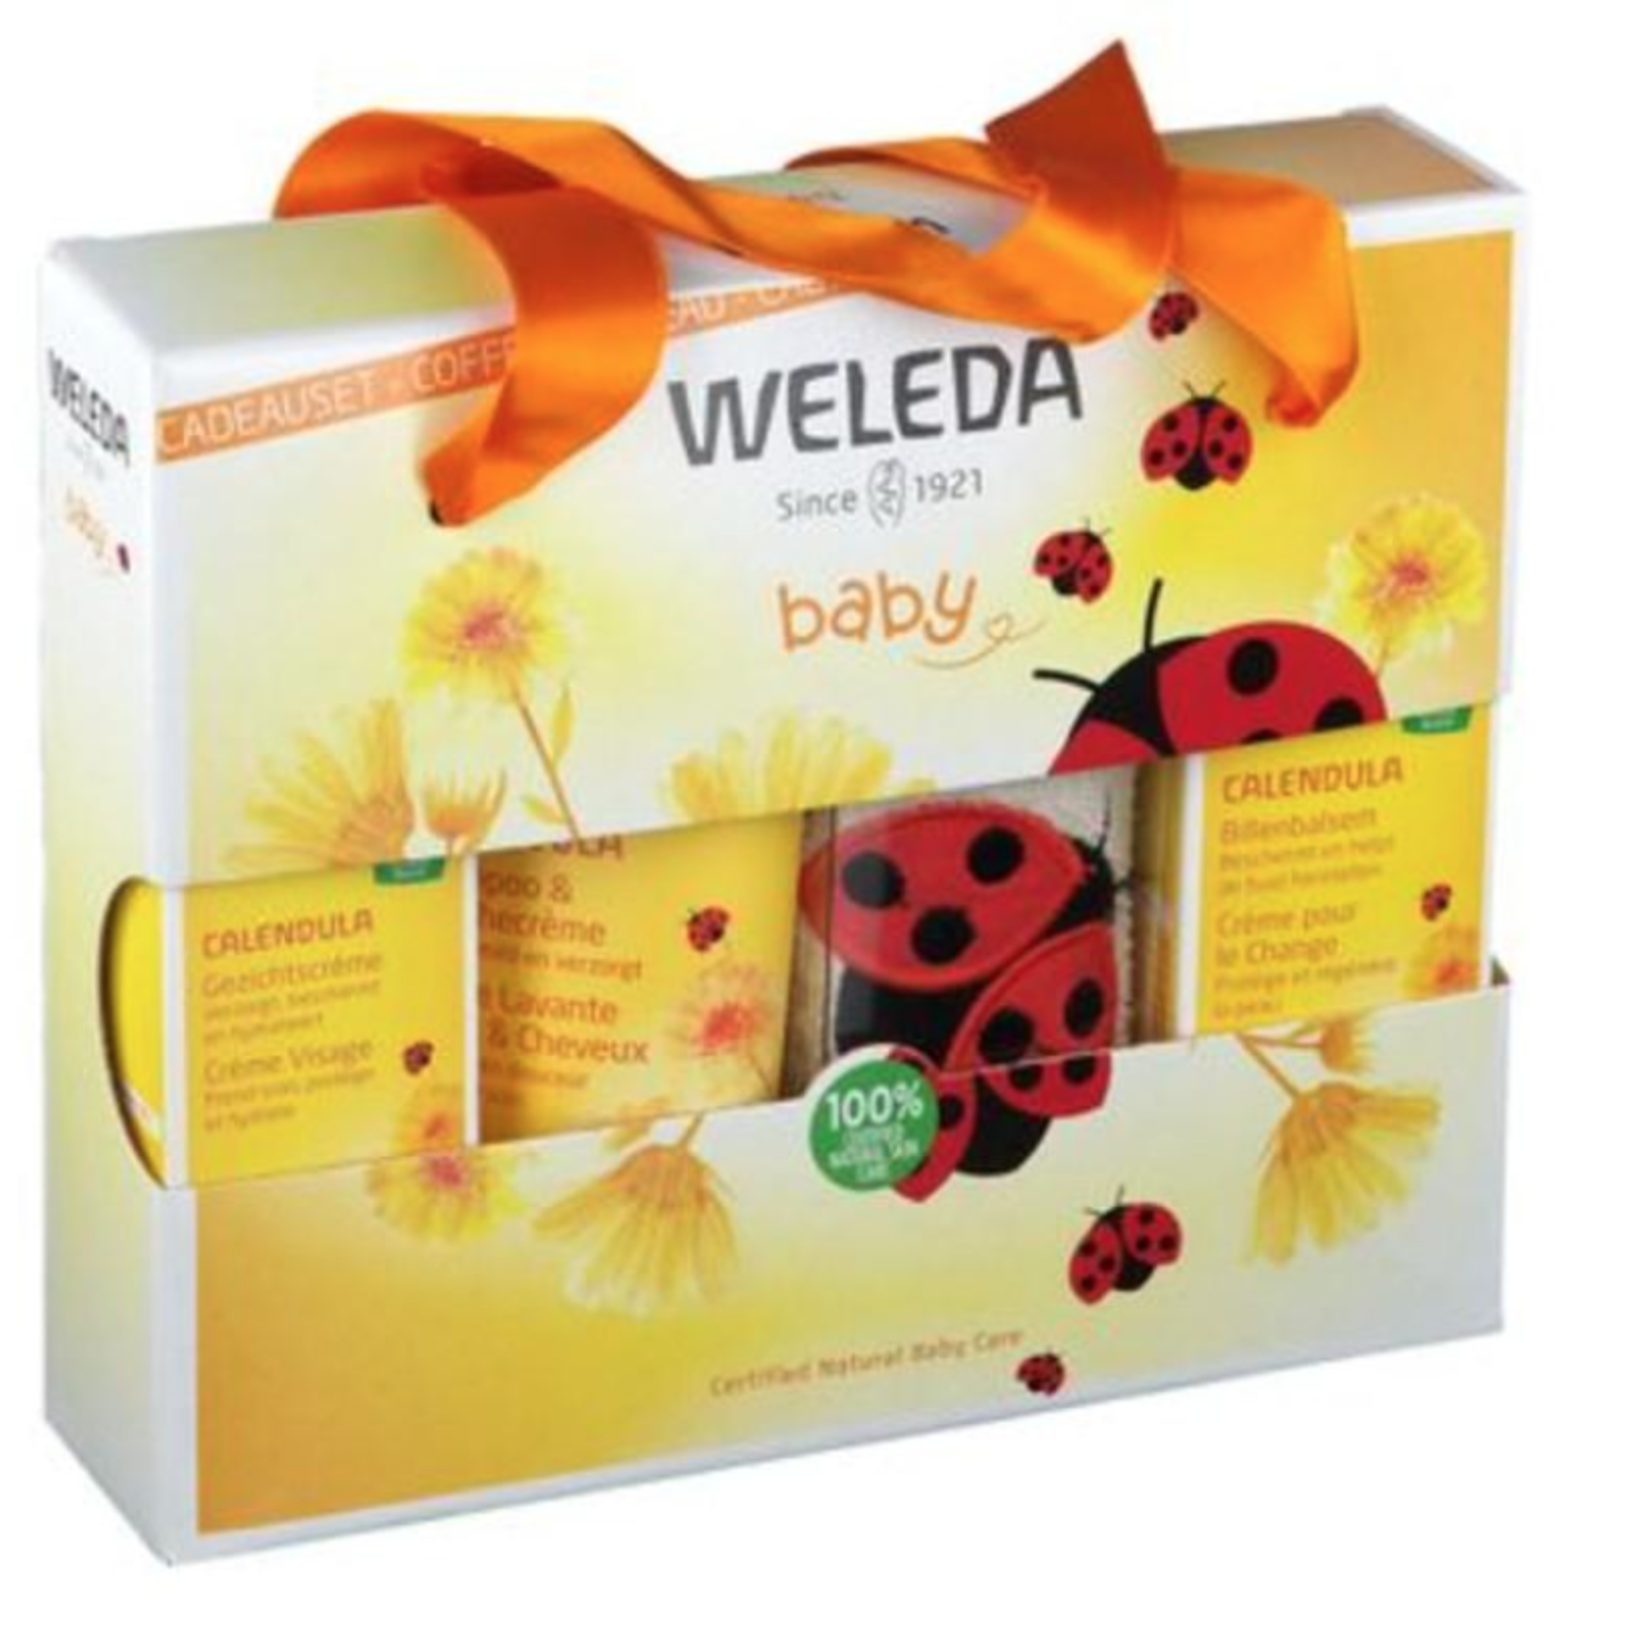 Weleda Weleda - Verzorging Voor Jouw Baby - Cadeauset Baby essentials